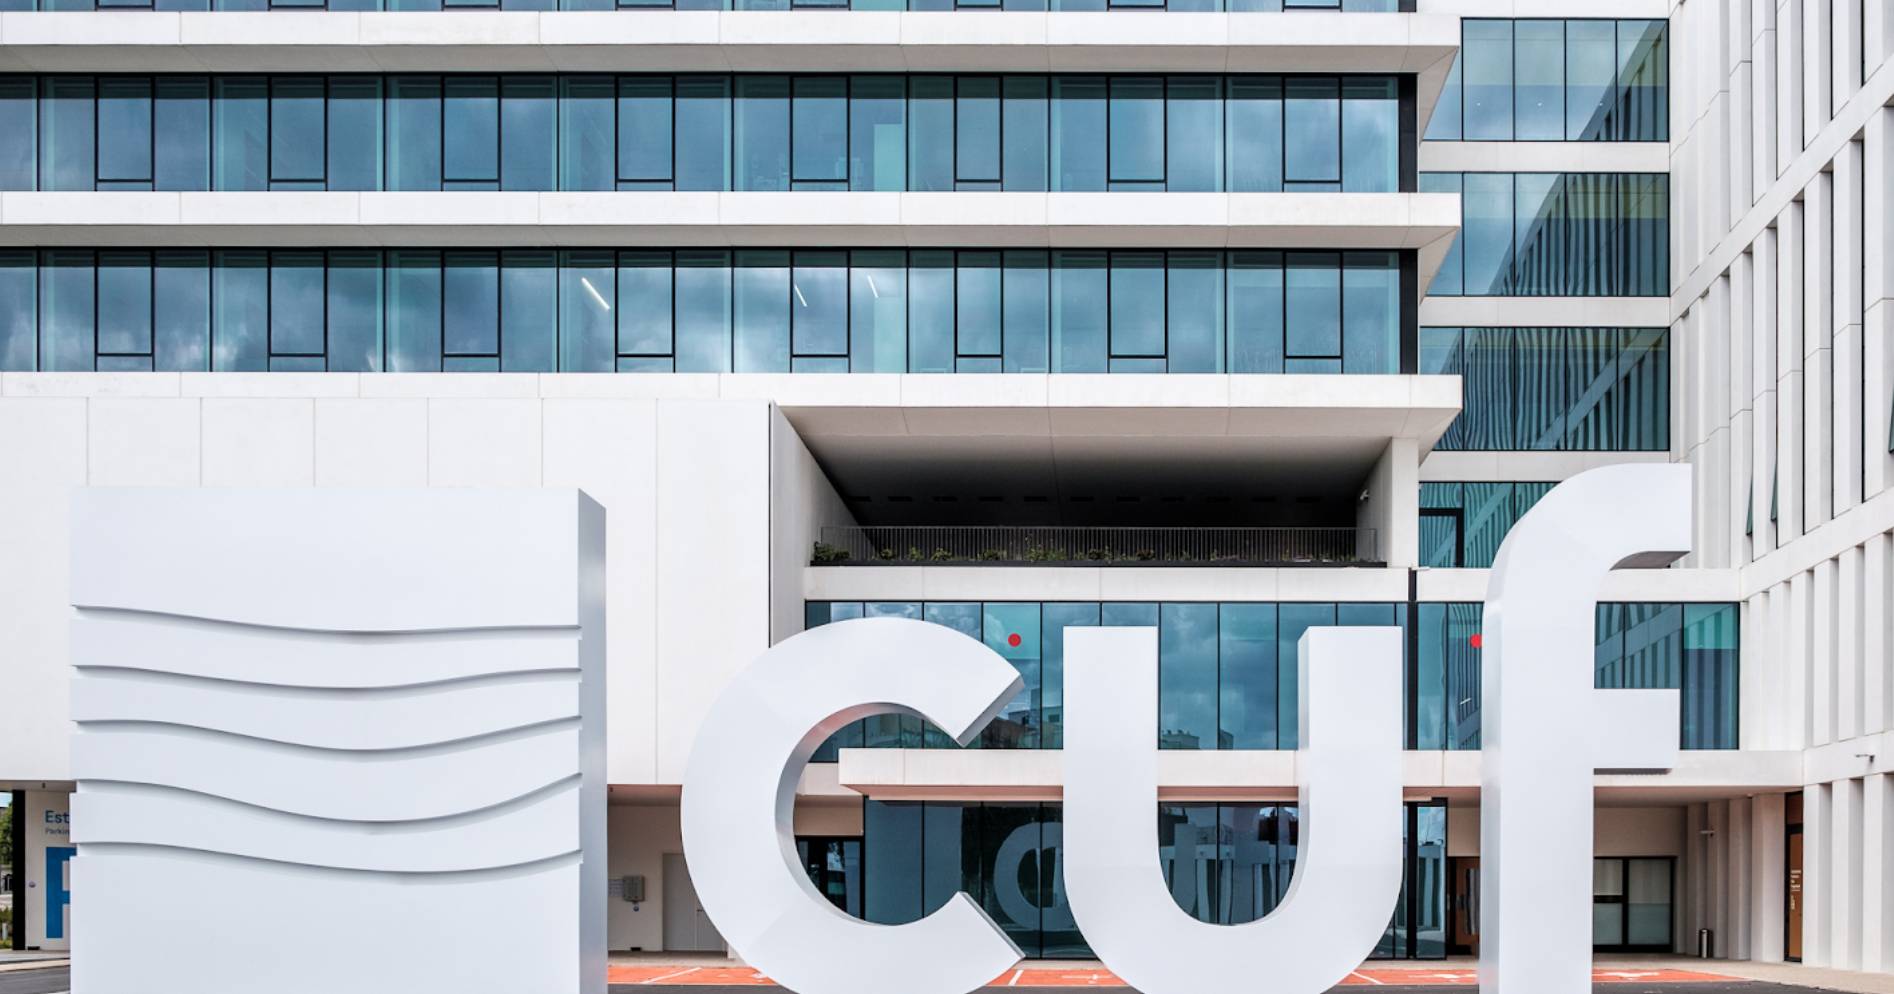 CUF chega a acordo para comprar Hospital Internacional dos Açores